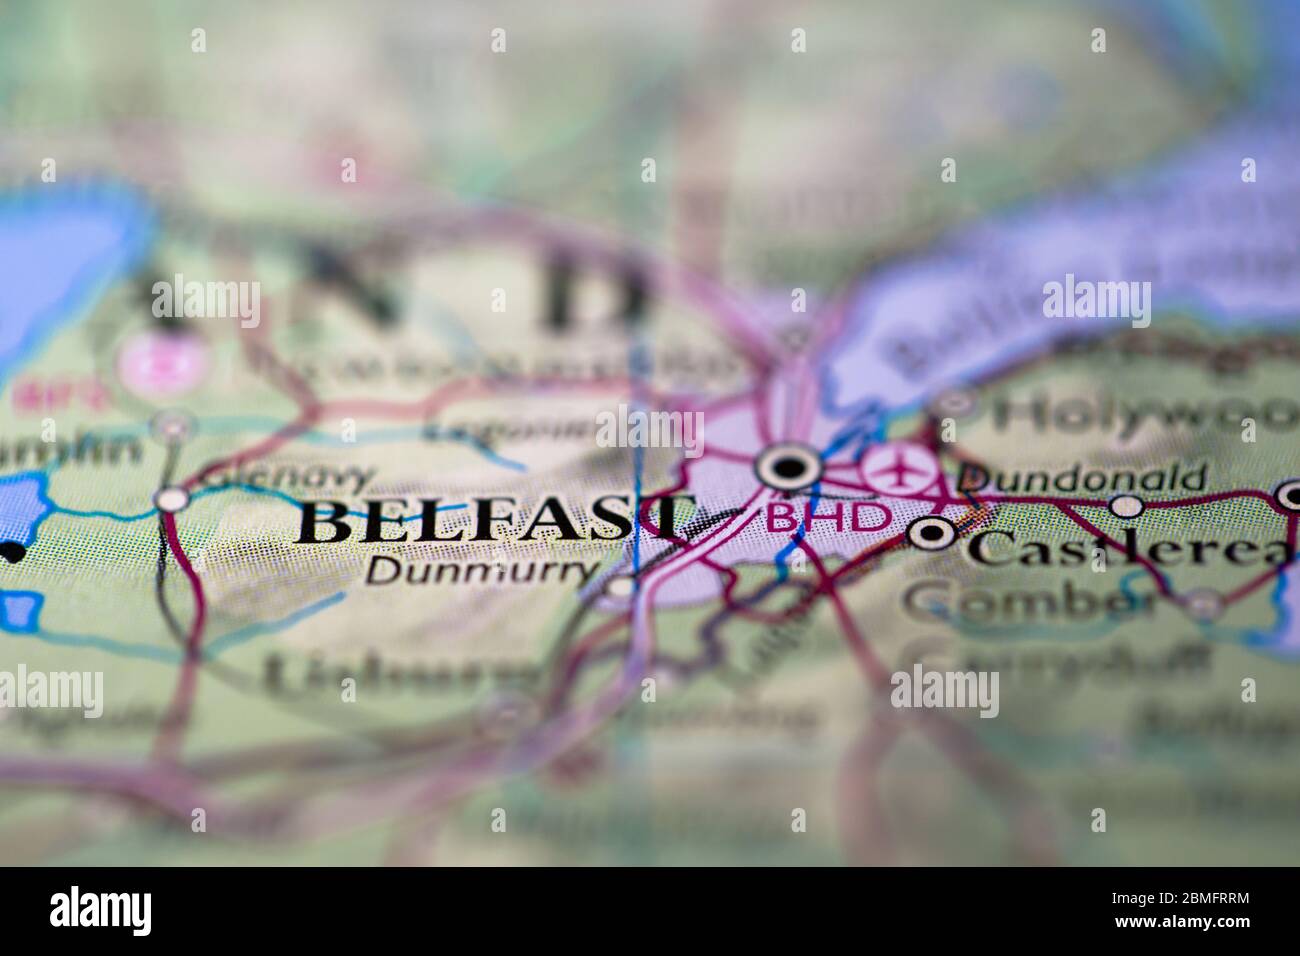 Geringe Schärfentiefe Fokus auf geografische Kartenposition der Stadt Belfast in Northern Island Großbritannien Europa Kontinent auf Atlas Stockfoto